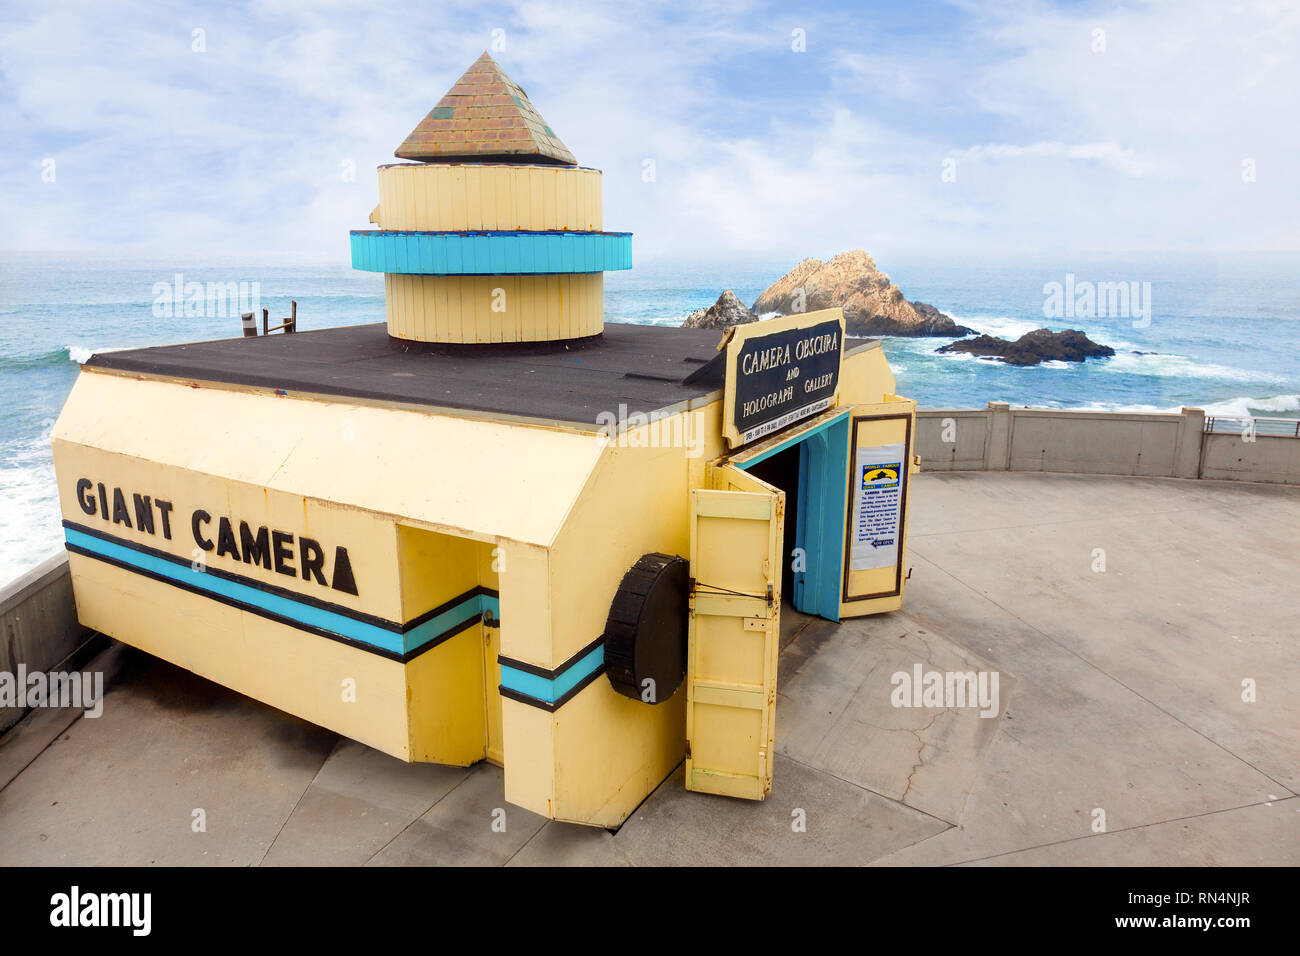 SAN FRANCISCO - Der Riese Kamera mit Blick auf das Meer am Strand. Eine touristische Attraktion seit 1946 ist es im National Register der Historischen Stätten. Stockfoto